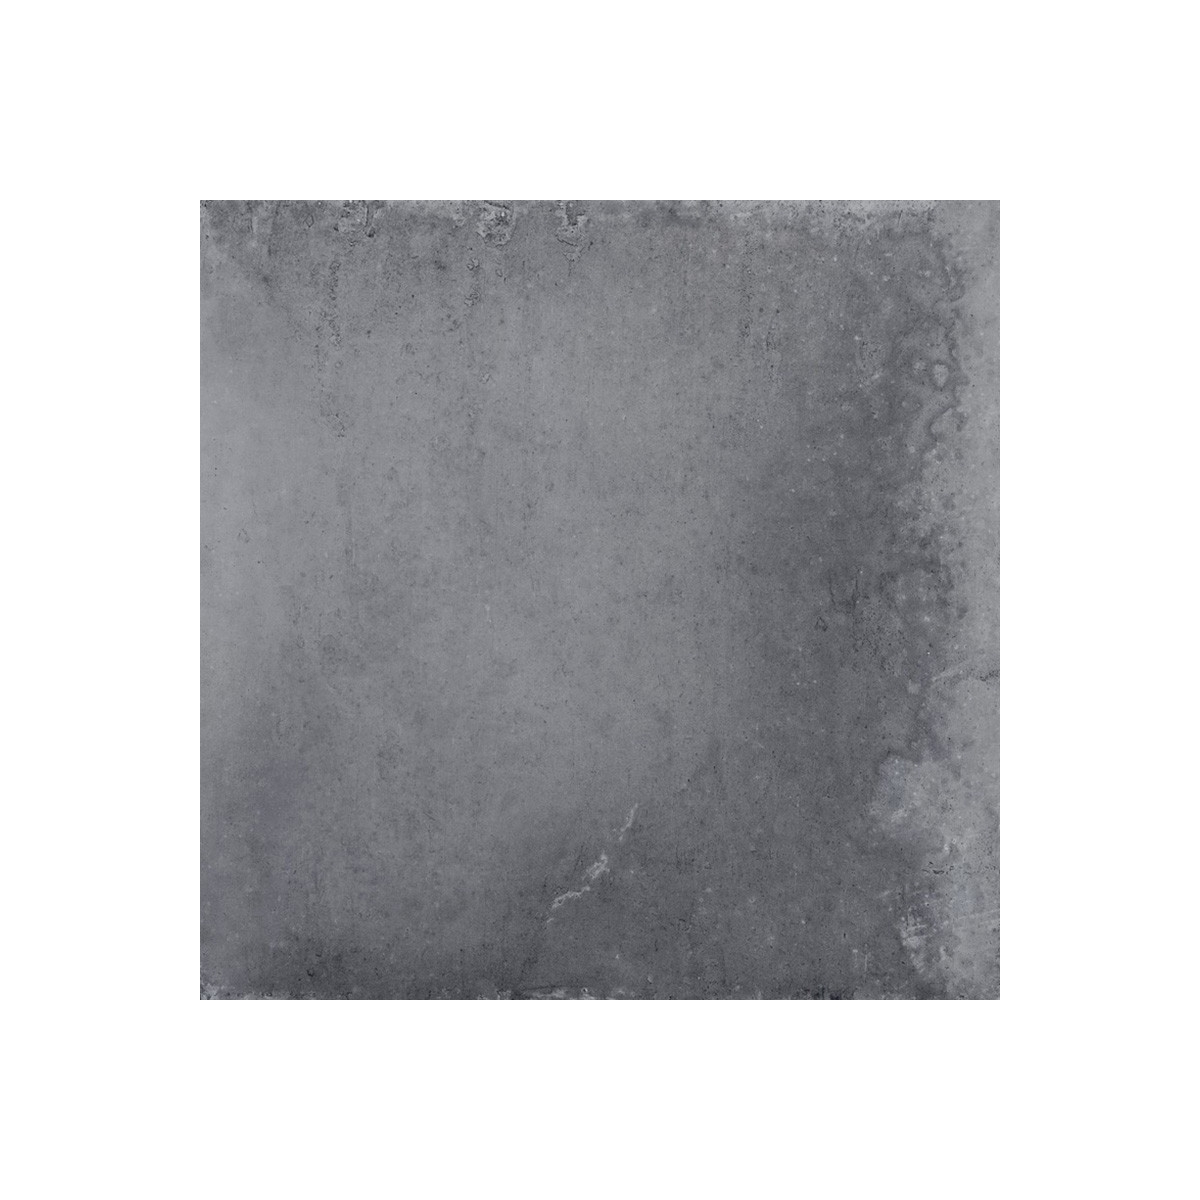 Pavimentos imitación hidráulico Gaya Fores - Rustic Gris 33,15x22,15 cm (caja 1.32 m2)